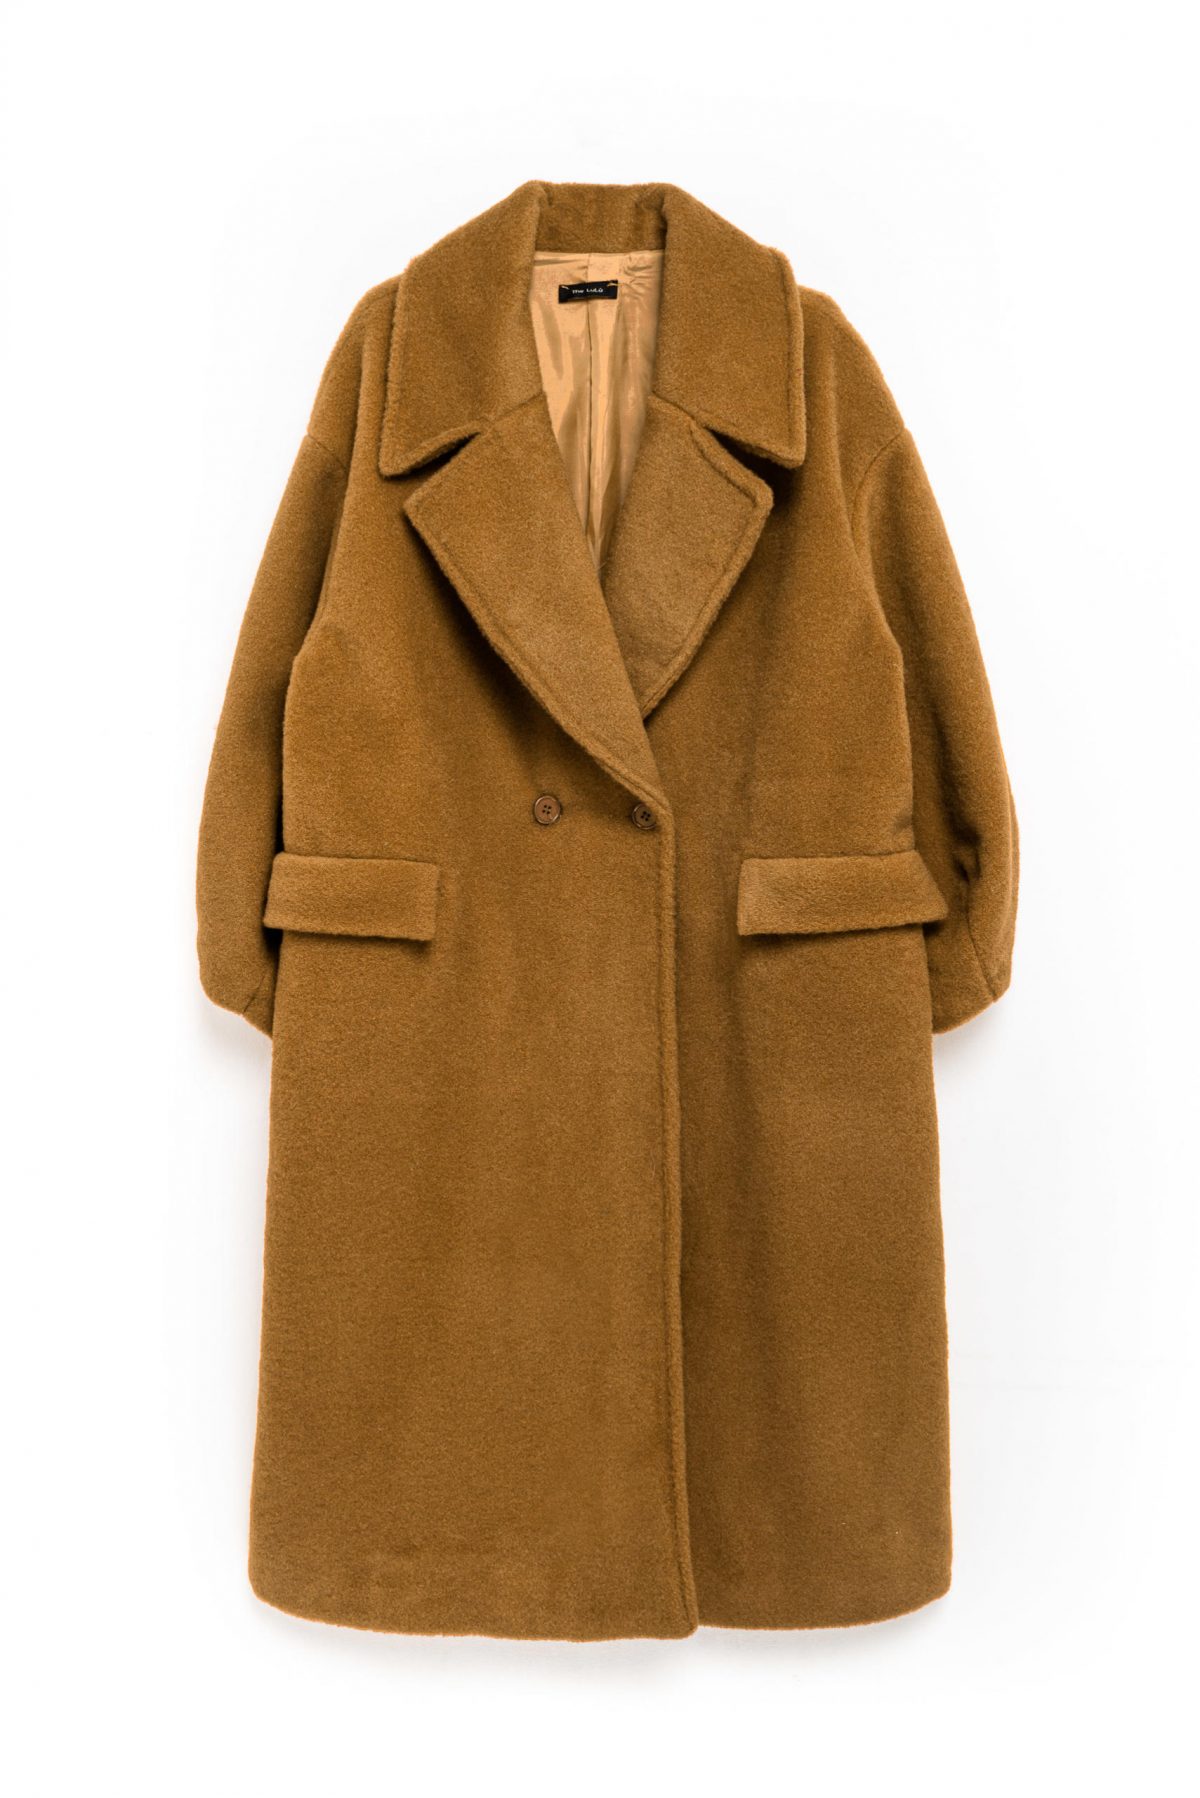 Woolen Long Coat in brown color